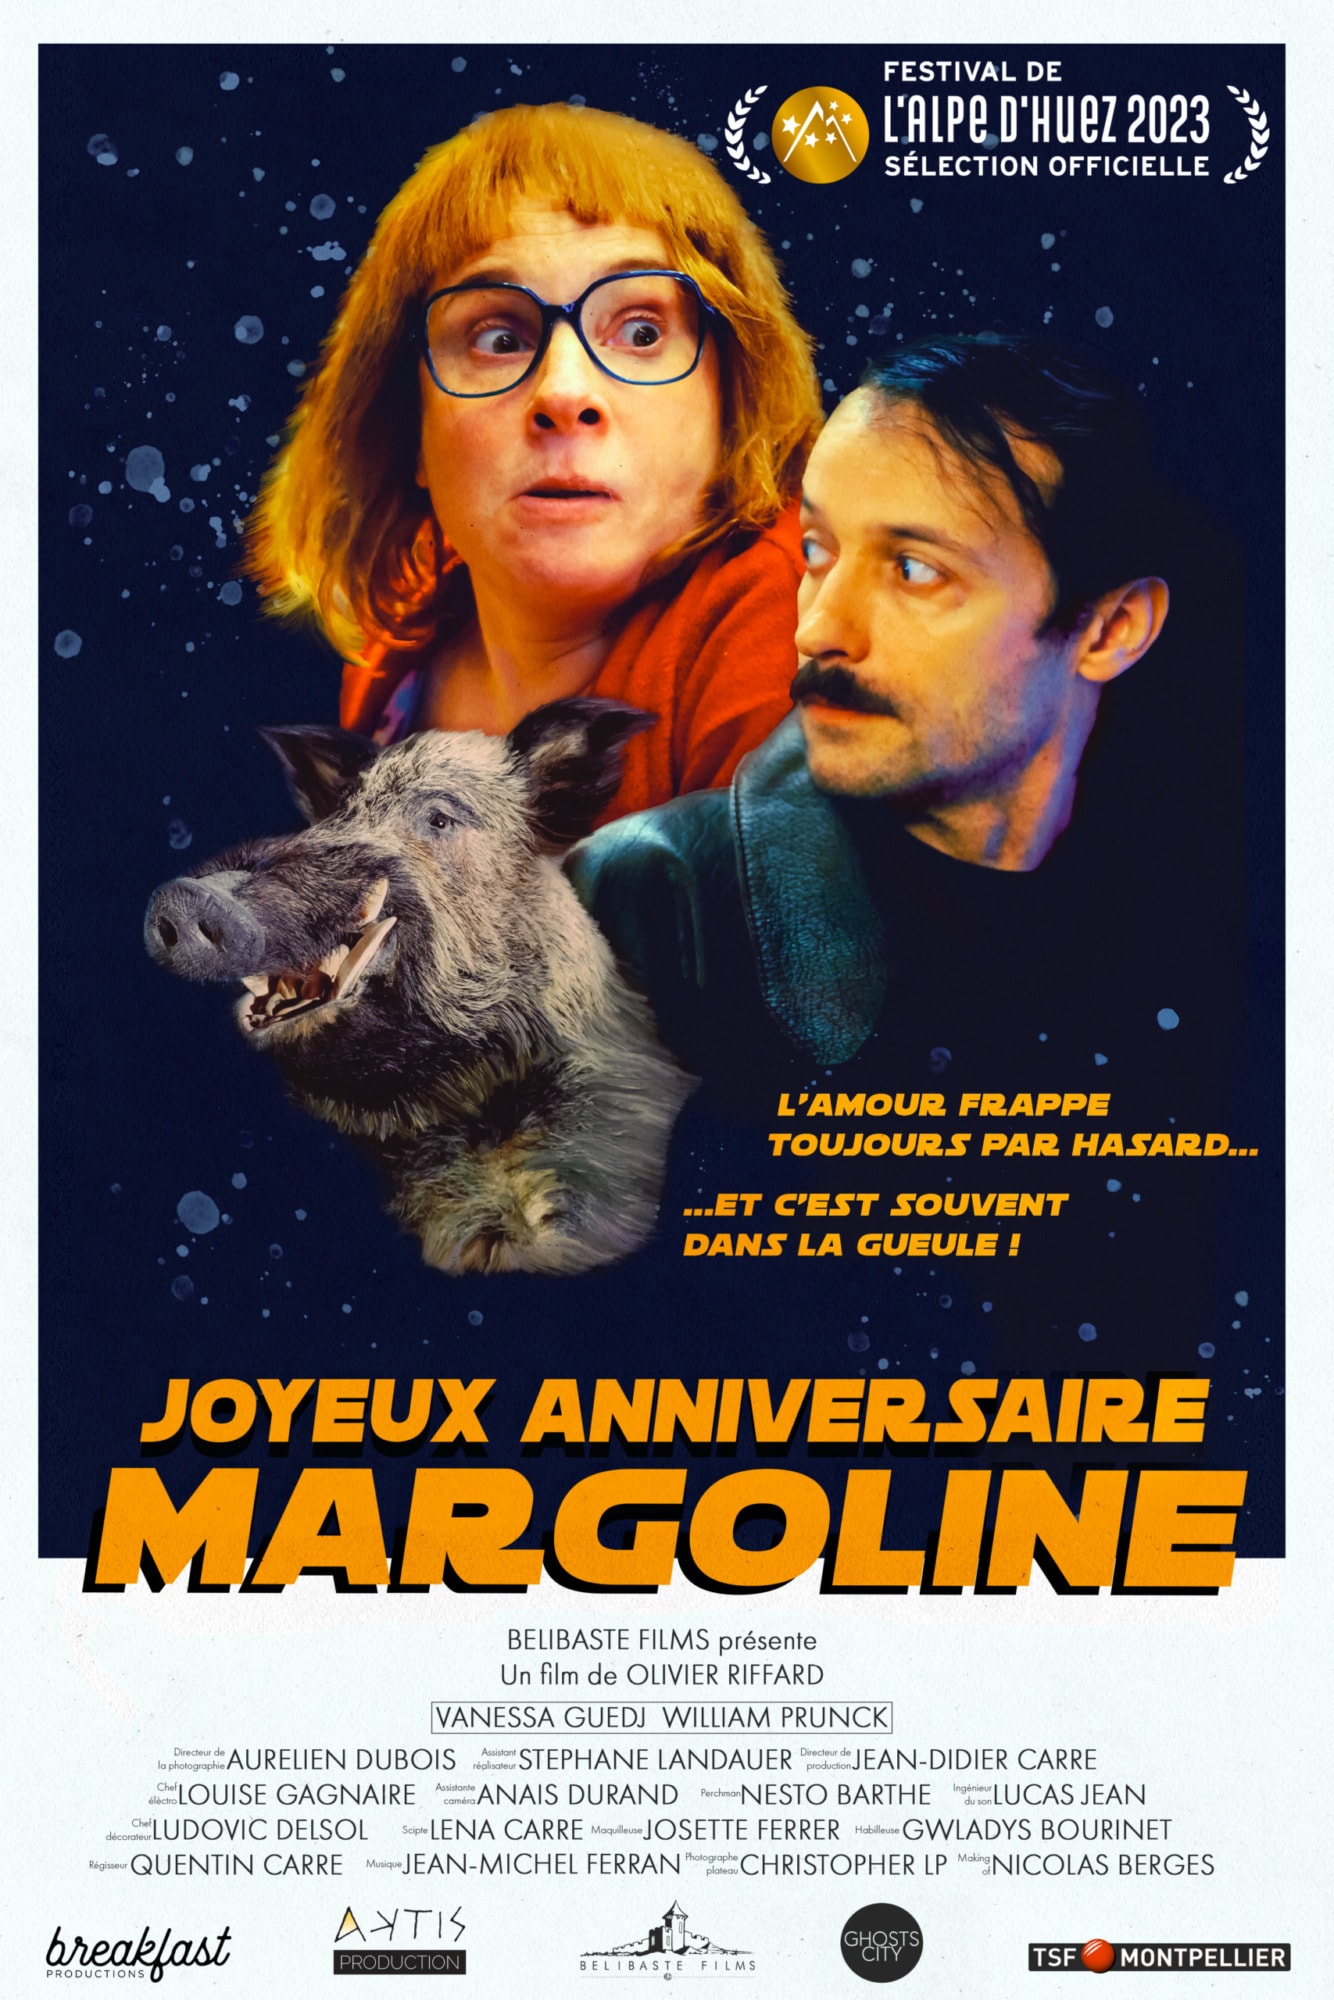 Happy birthday Margoline